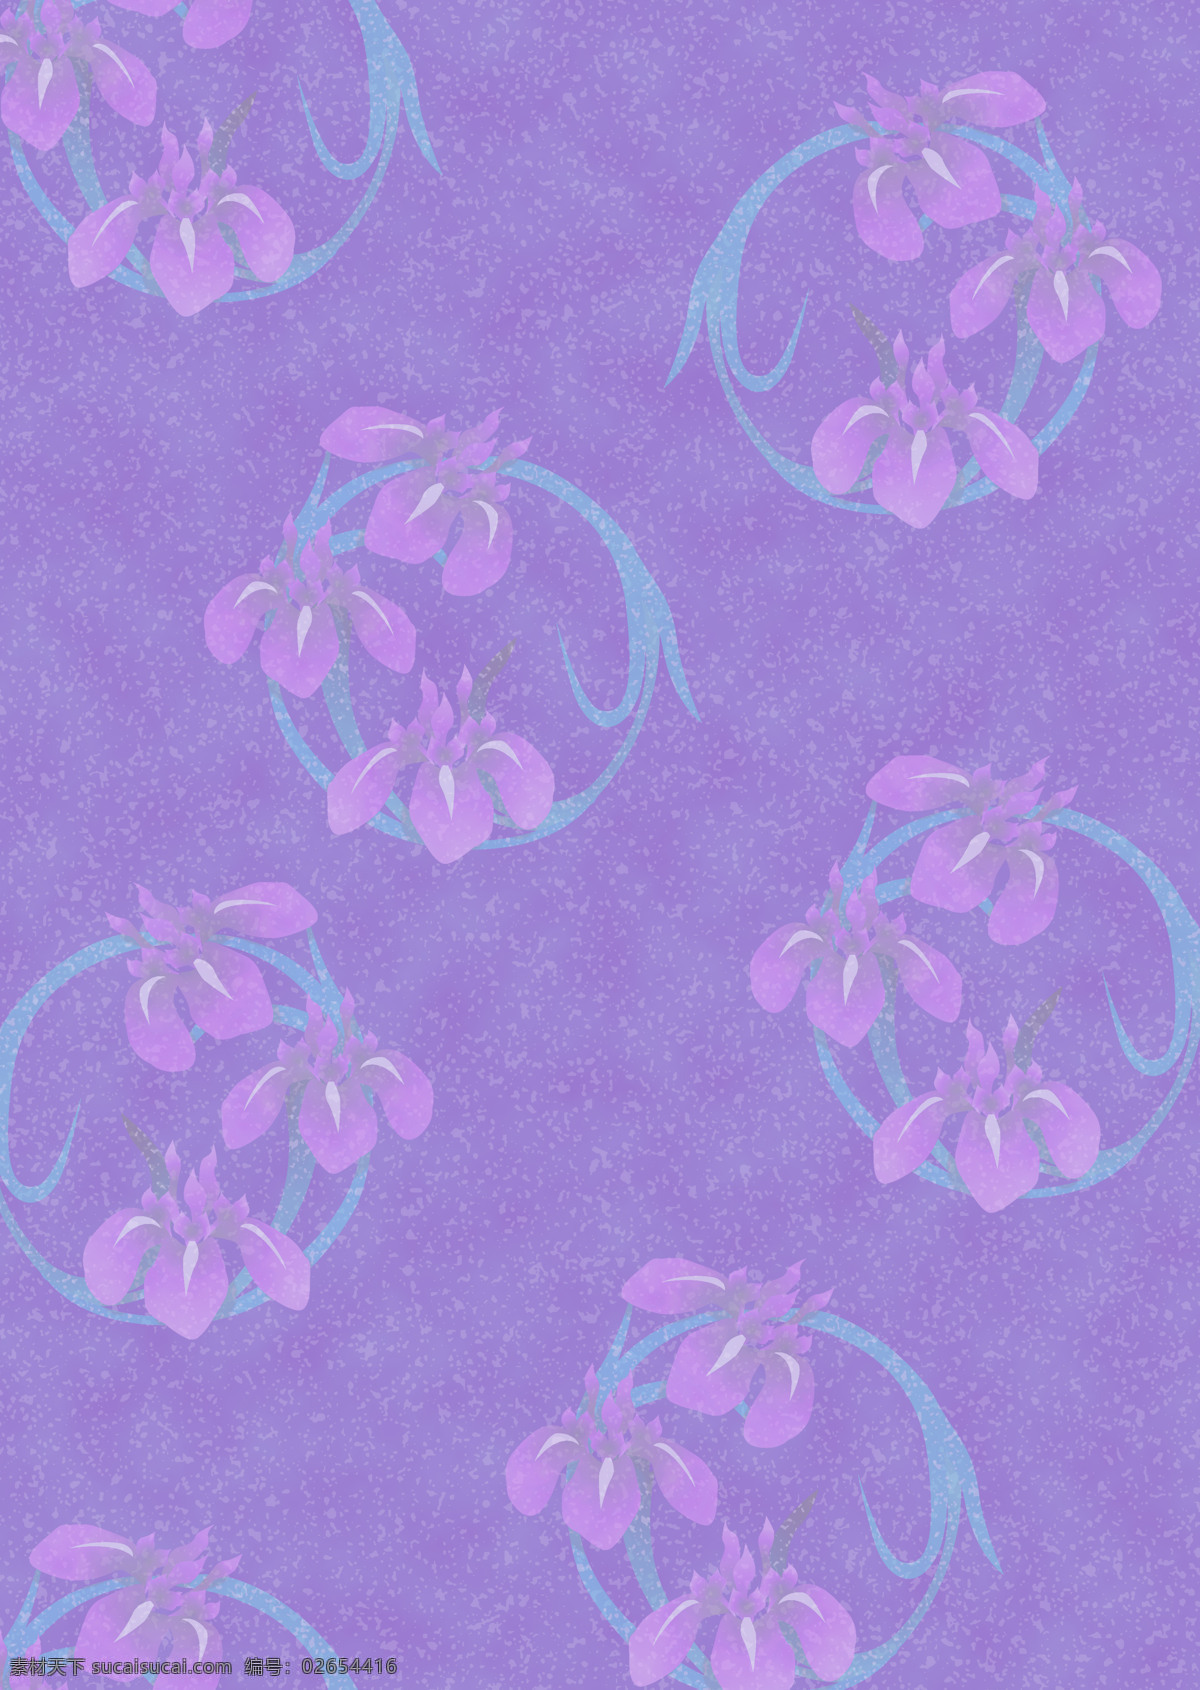 紫色 枝叶 花纹 叠加 单 页 背景 图 版面设计背景 版式 模板设计 设计素材 紫色枝叶 花纹叠加 背景图片